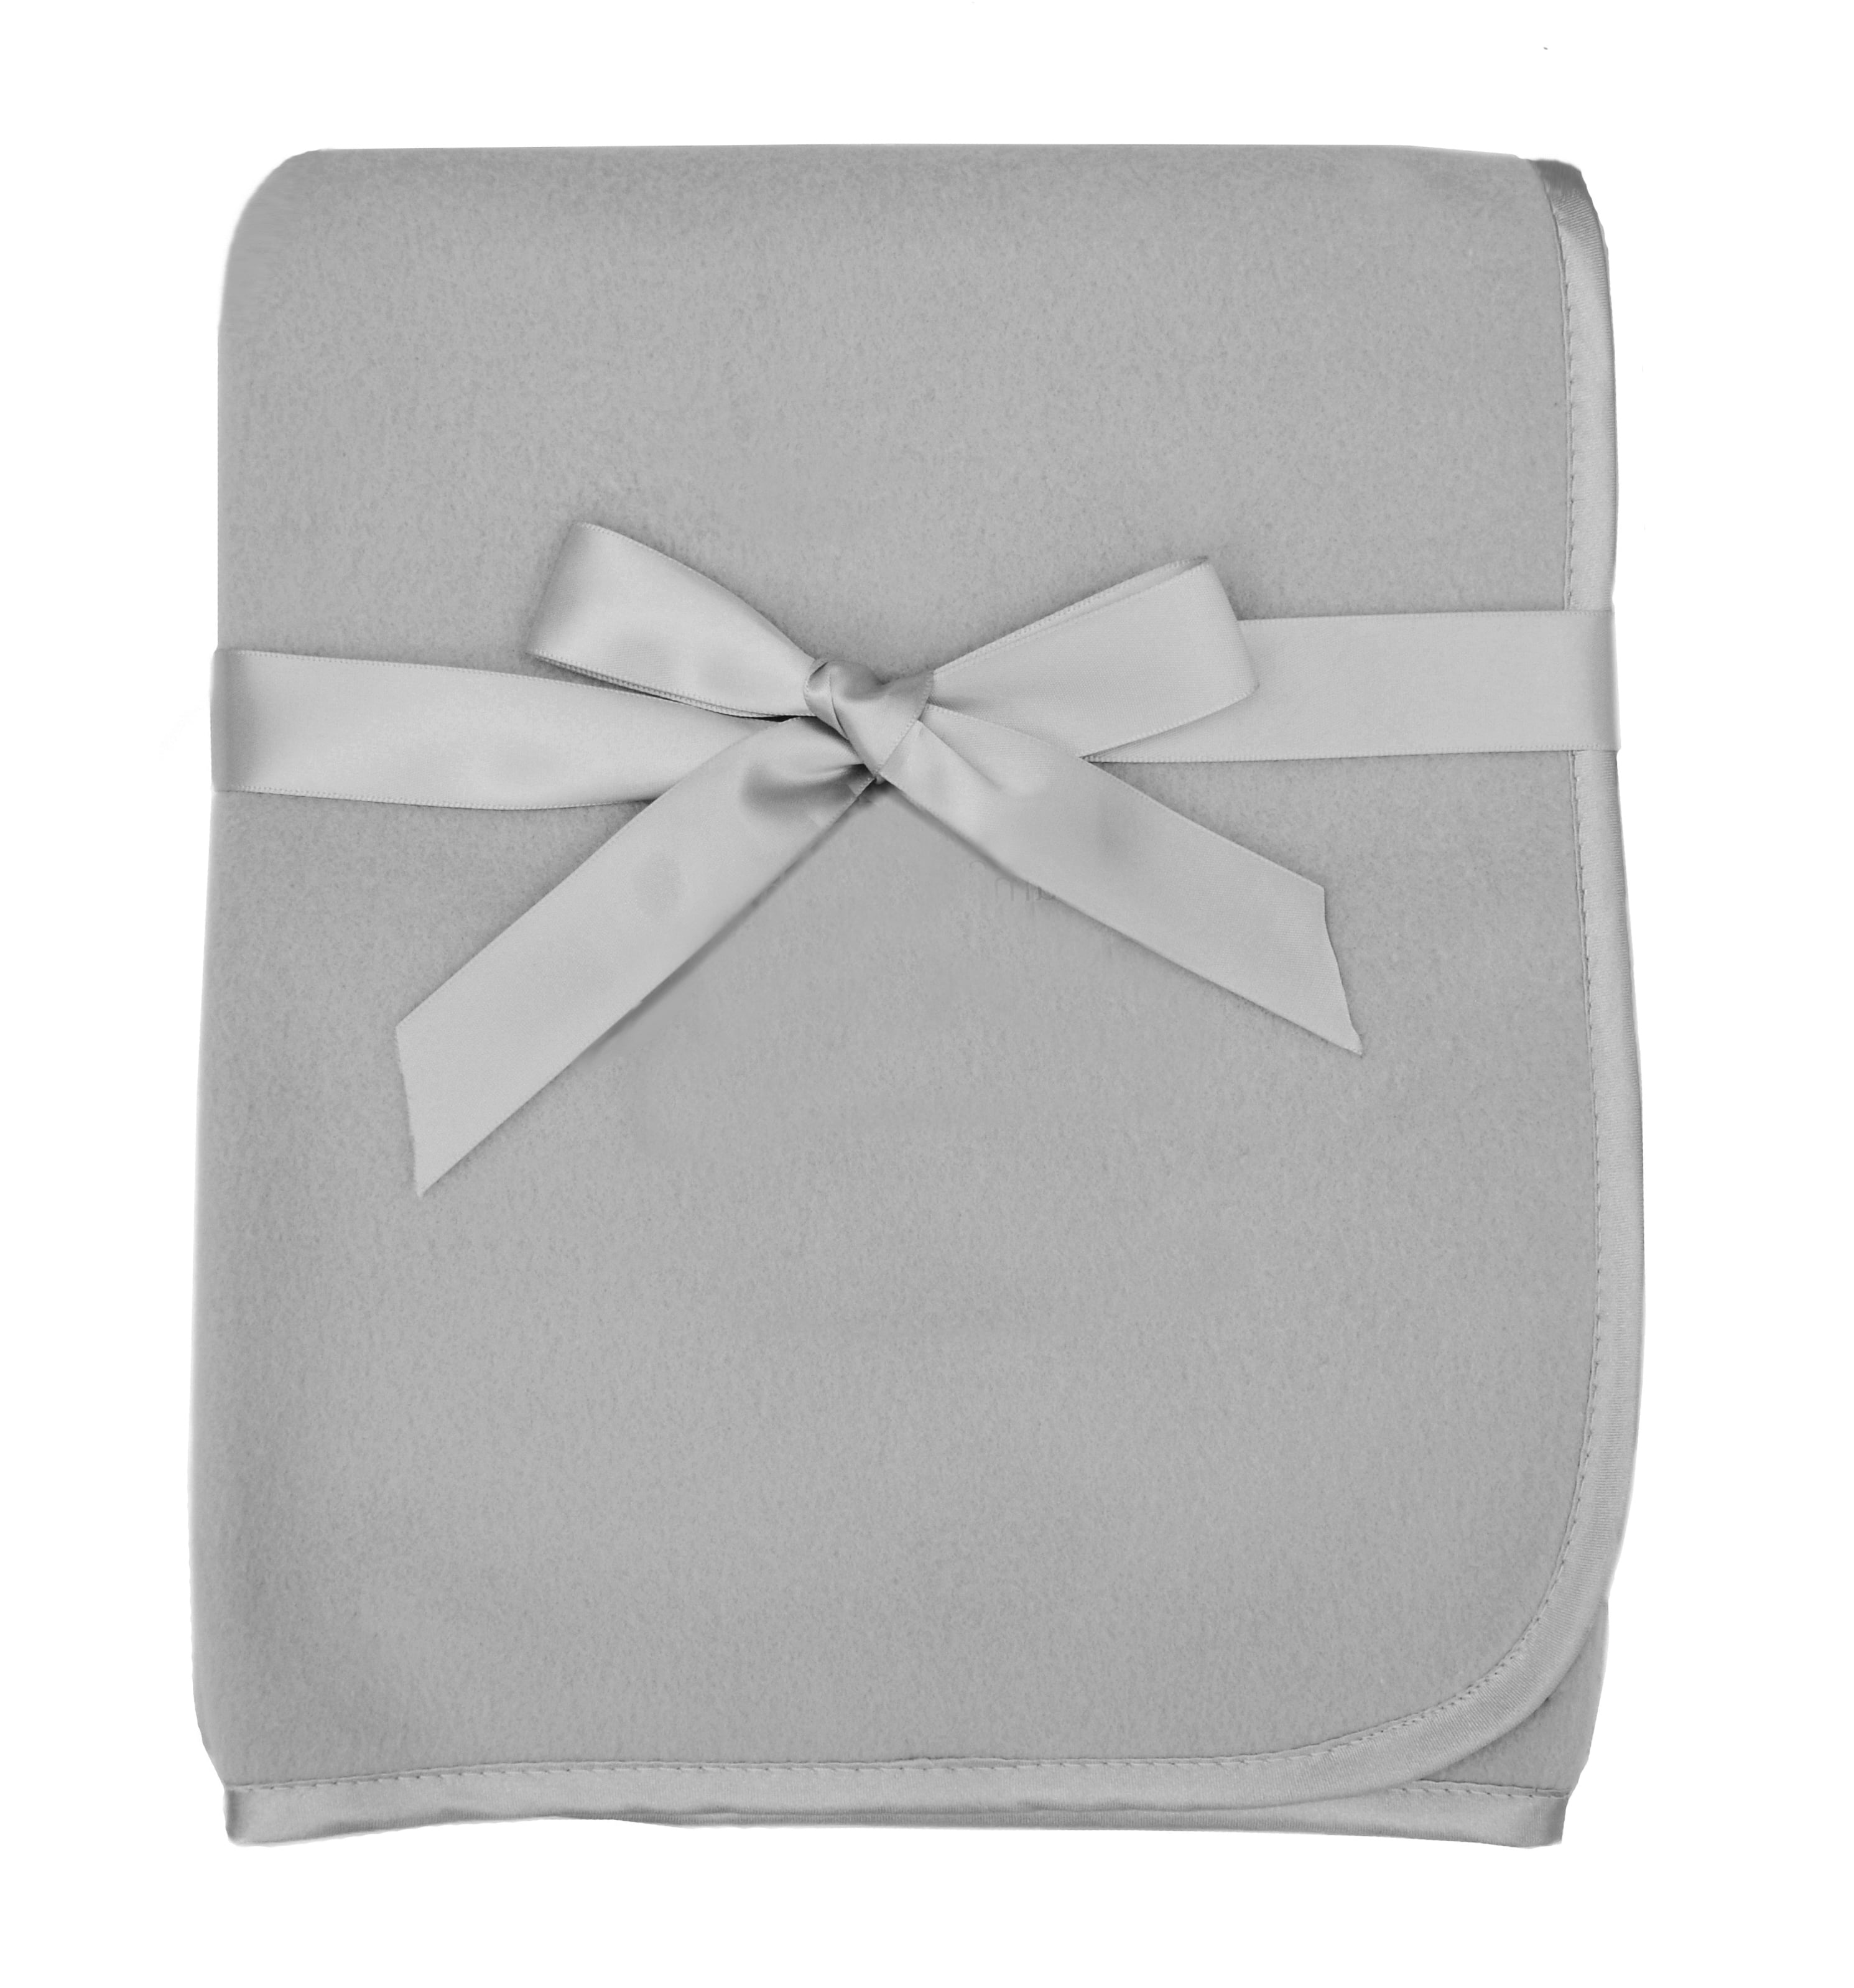 Fleece Water Proof Multi-Purpose Baby Blanket 30”x40” 